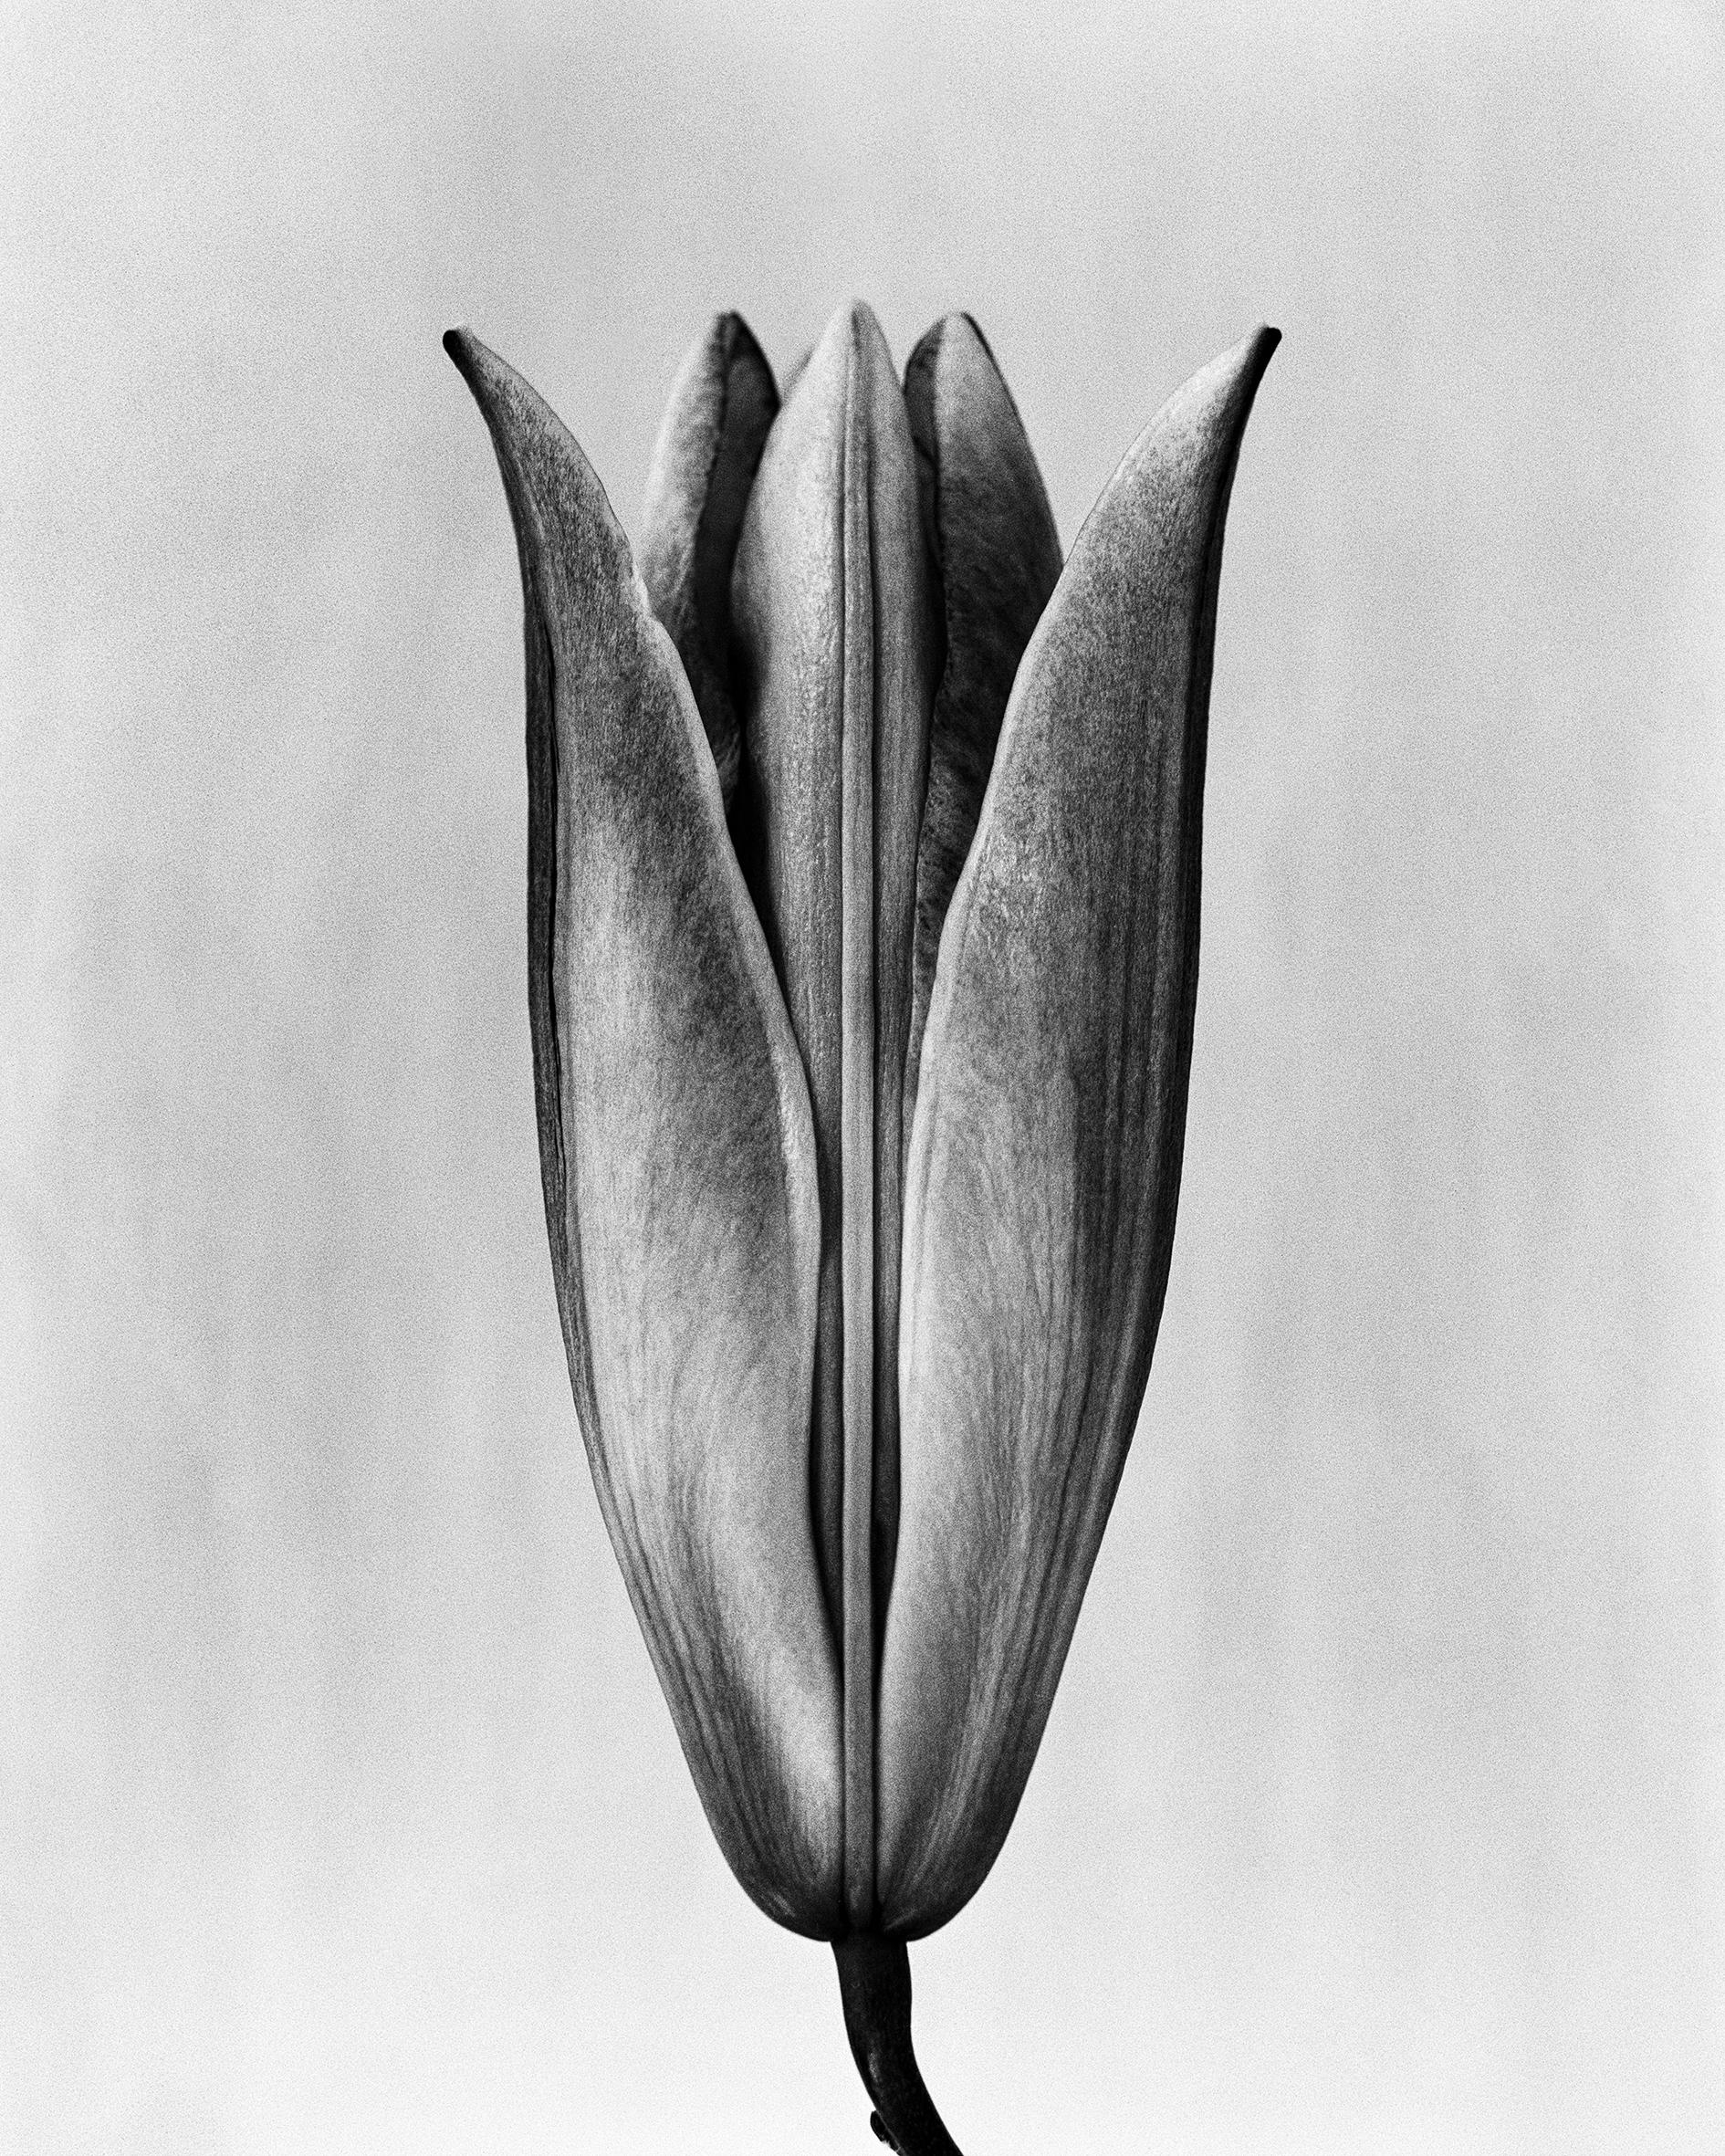 Ugne Pouwell Black and White Photograph – Lily '23 Schwarz-Weiß- analoge Blumenfotografie, Auflage von 10 Stück